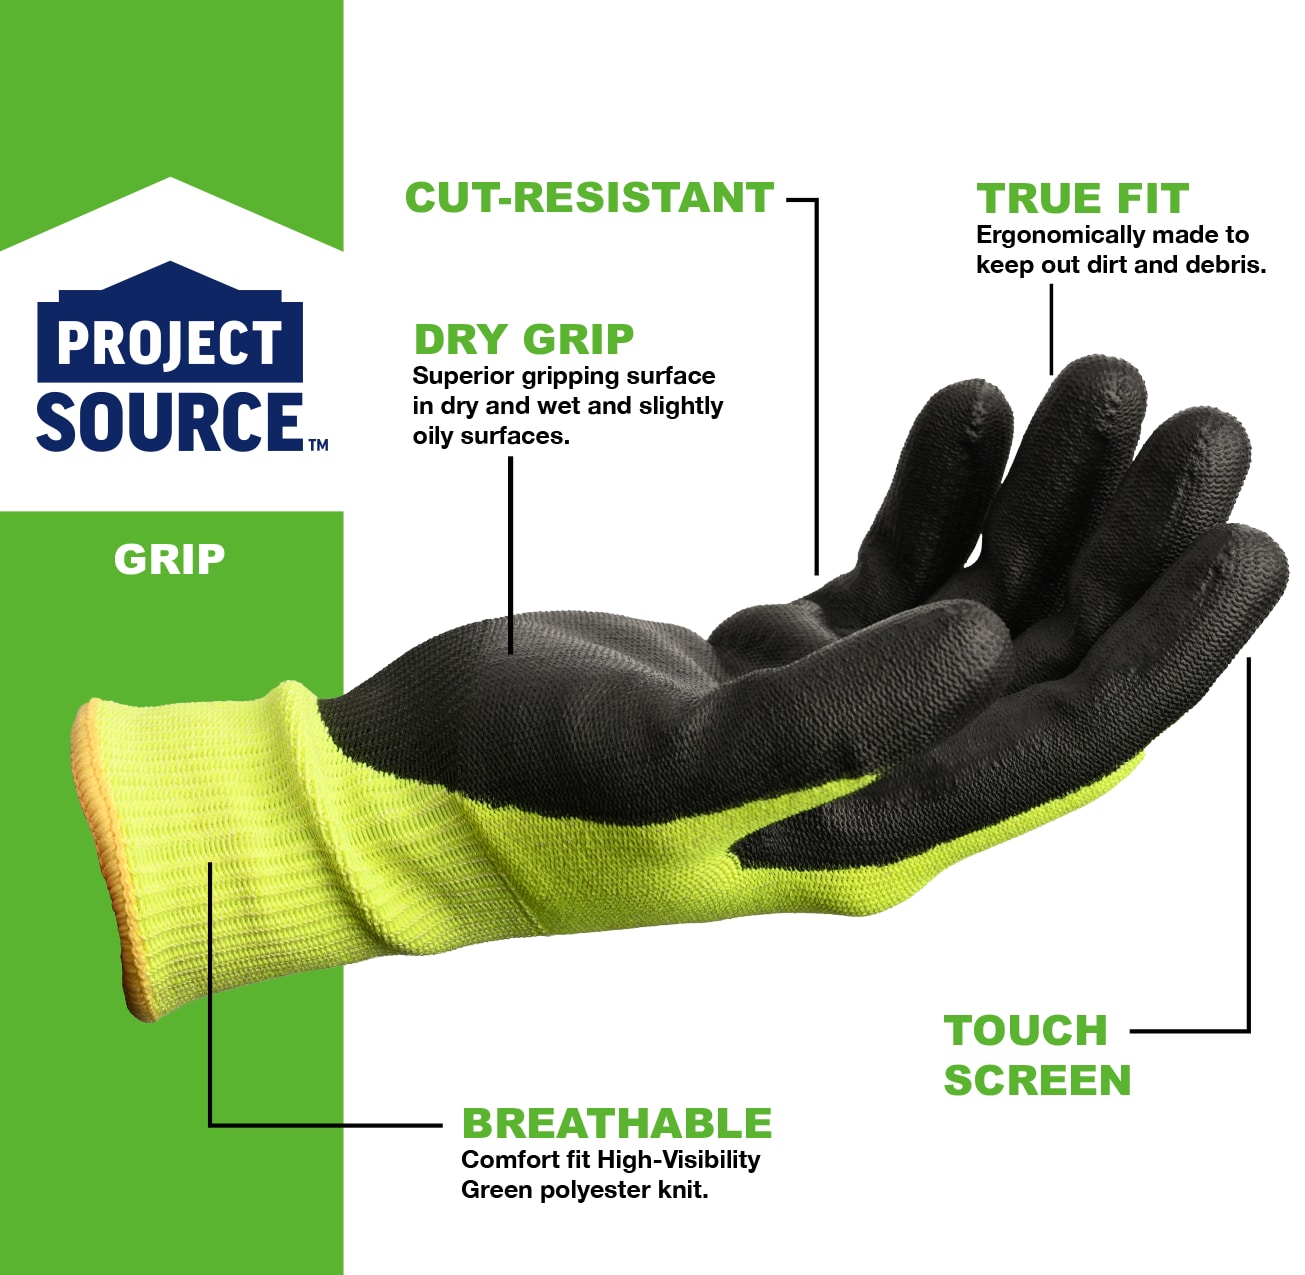 MidWest Gloves & Gear, Unisex, 6 Pack Max Grip™ Hi-Viz Yellow Gripper  Glove, Size SM